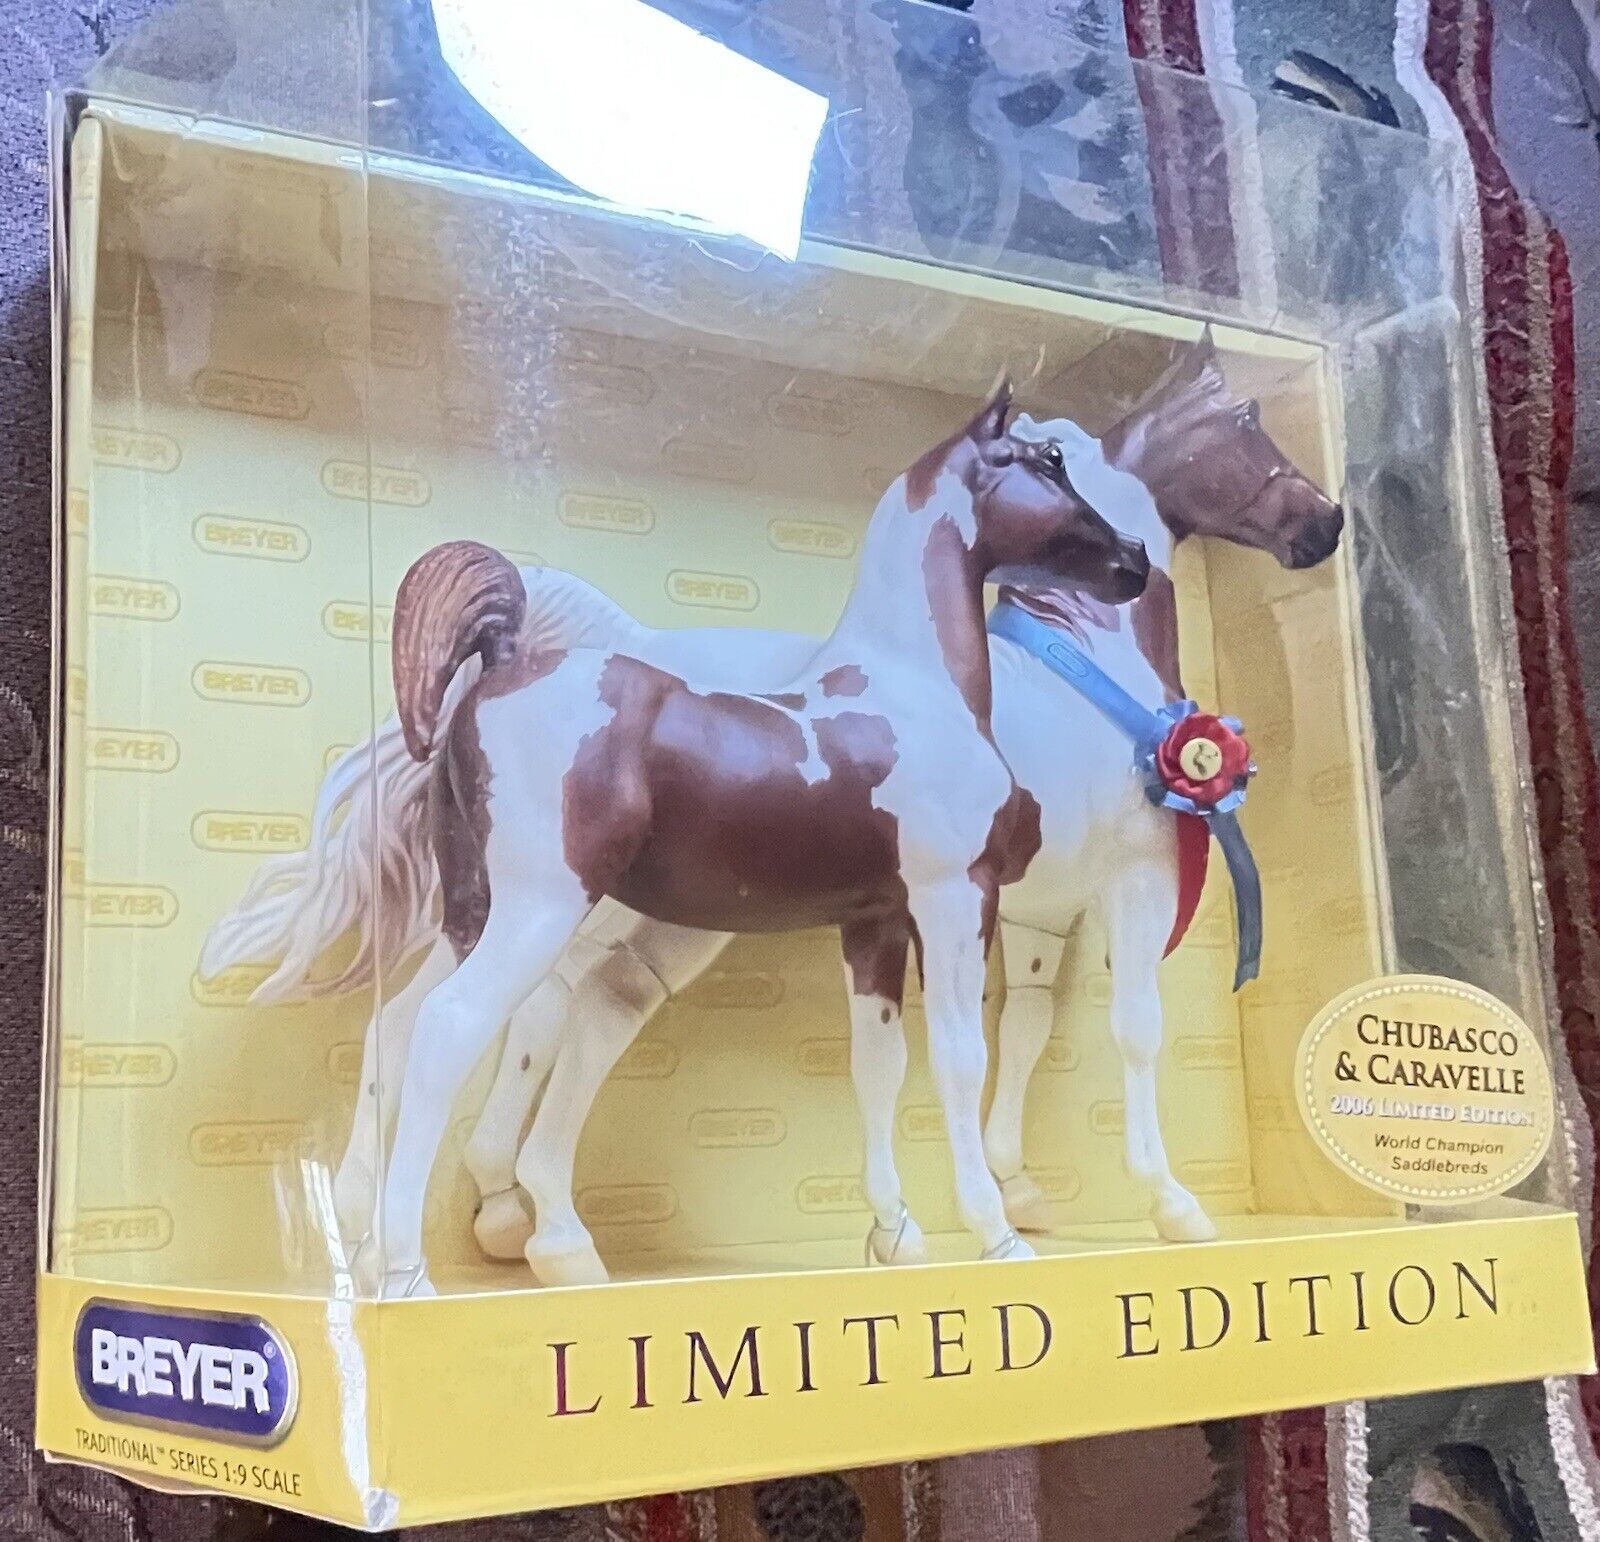 BREYER HORSES-UNOPENED BOX #1268 “Limited Edition” Chubasco&Caravelle